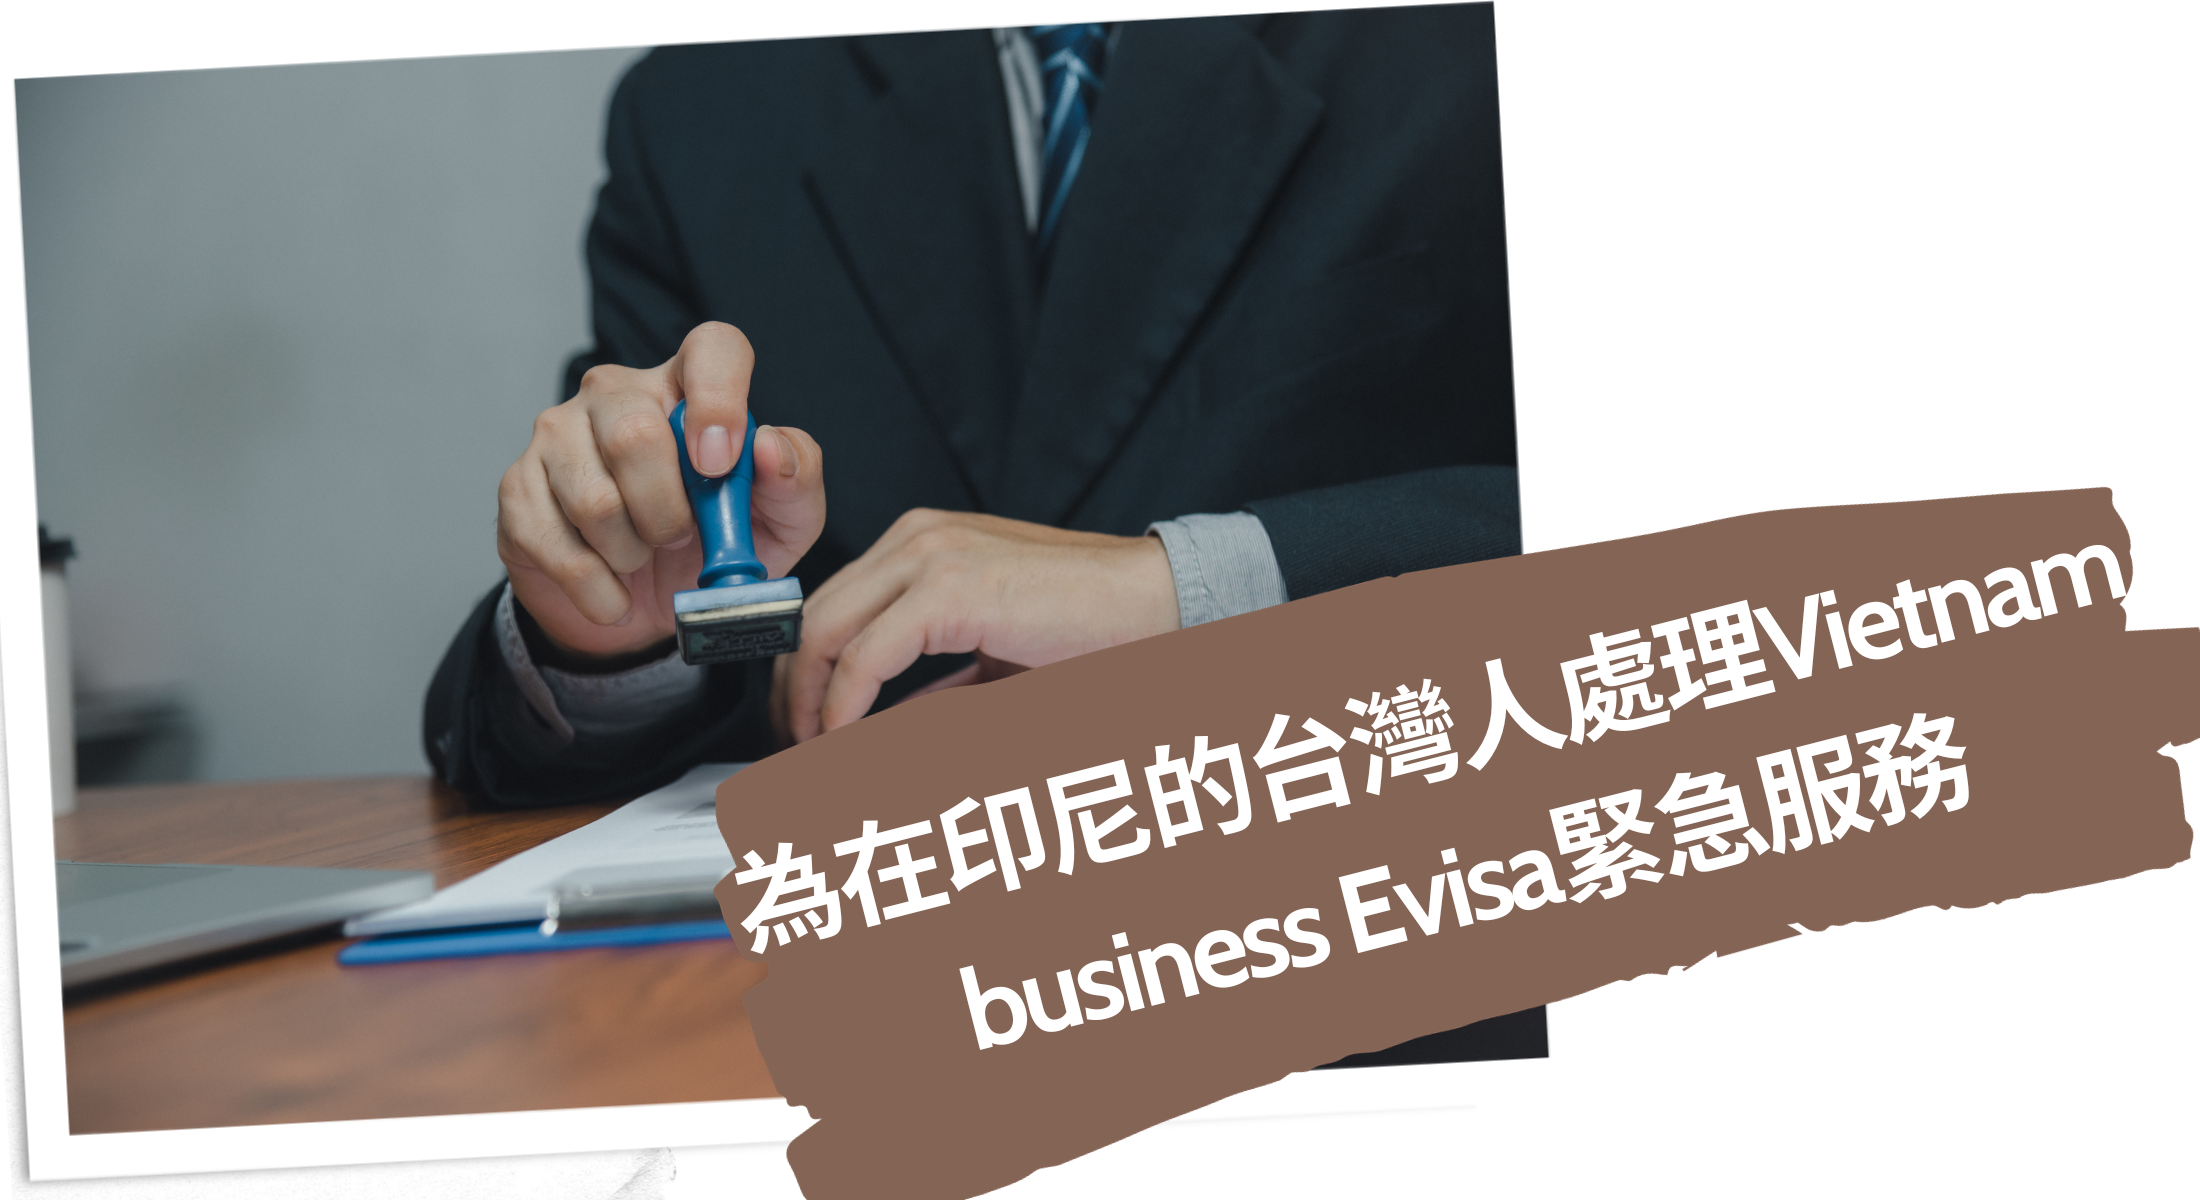 2024為在印尼的台灣人處理Vietnam business Evisa緊急服務